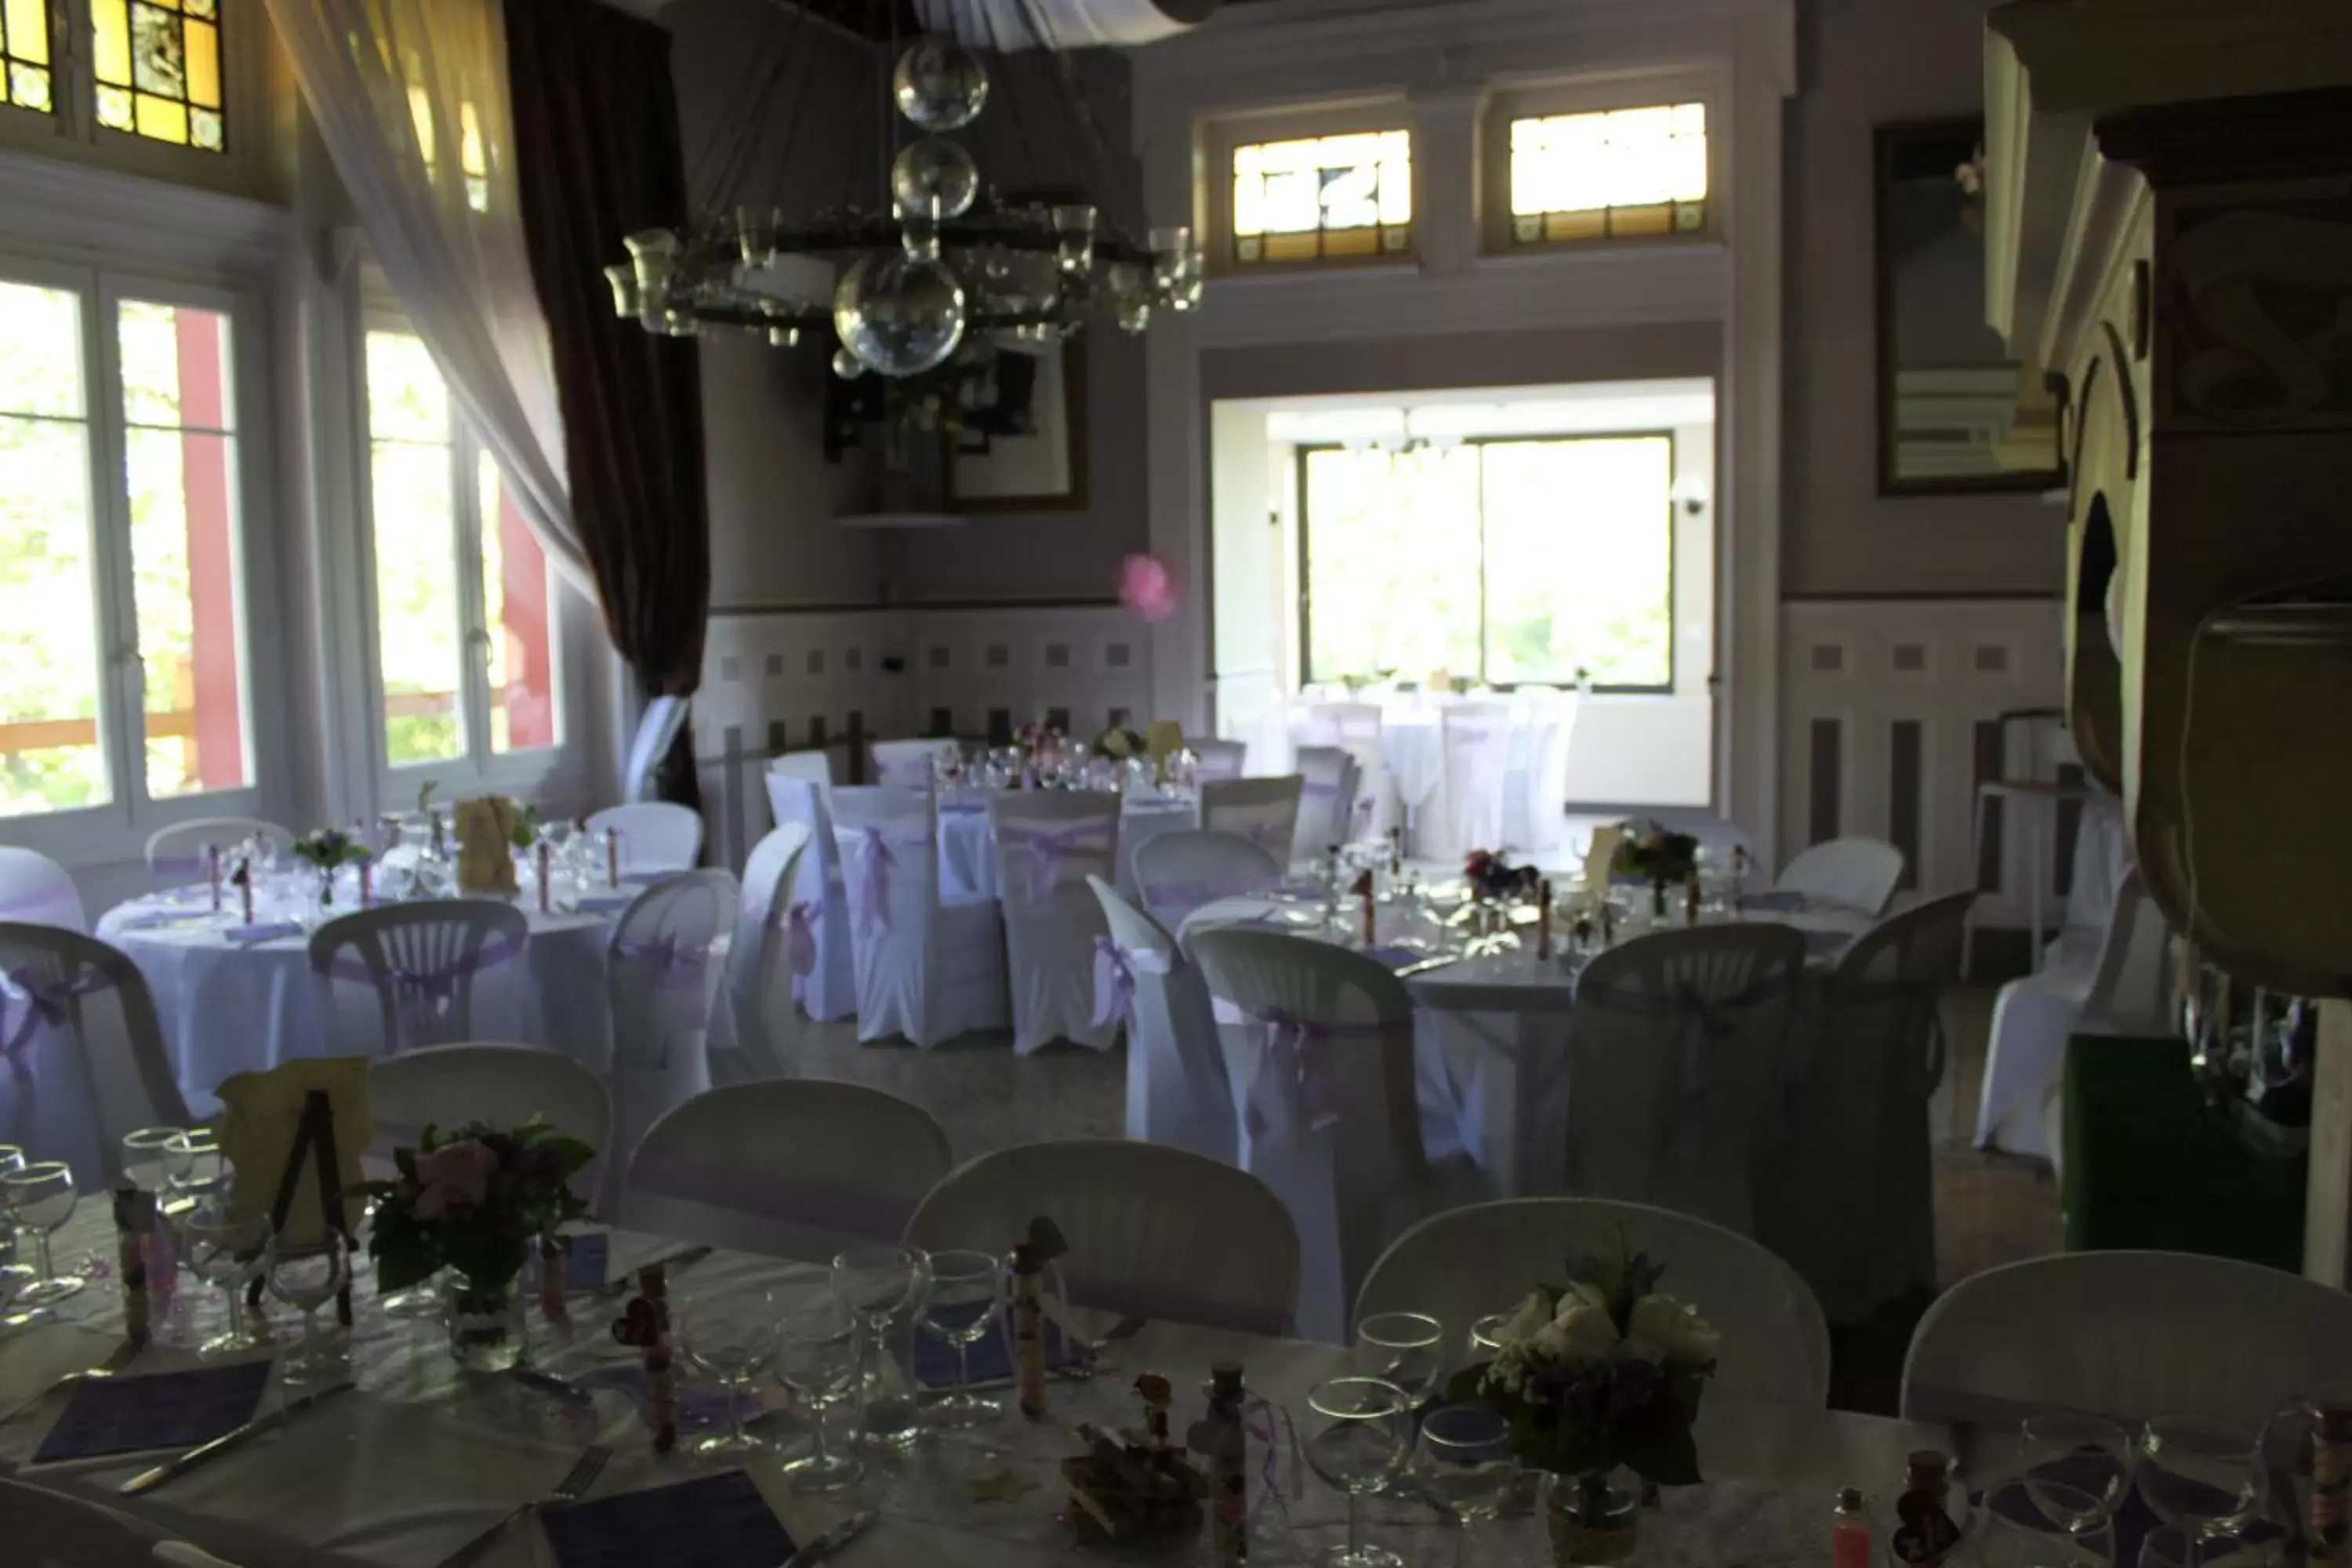 Restaurant/places to eat, Banquet Facilities in La Garenne de Morestel